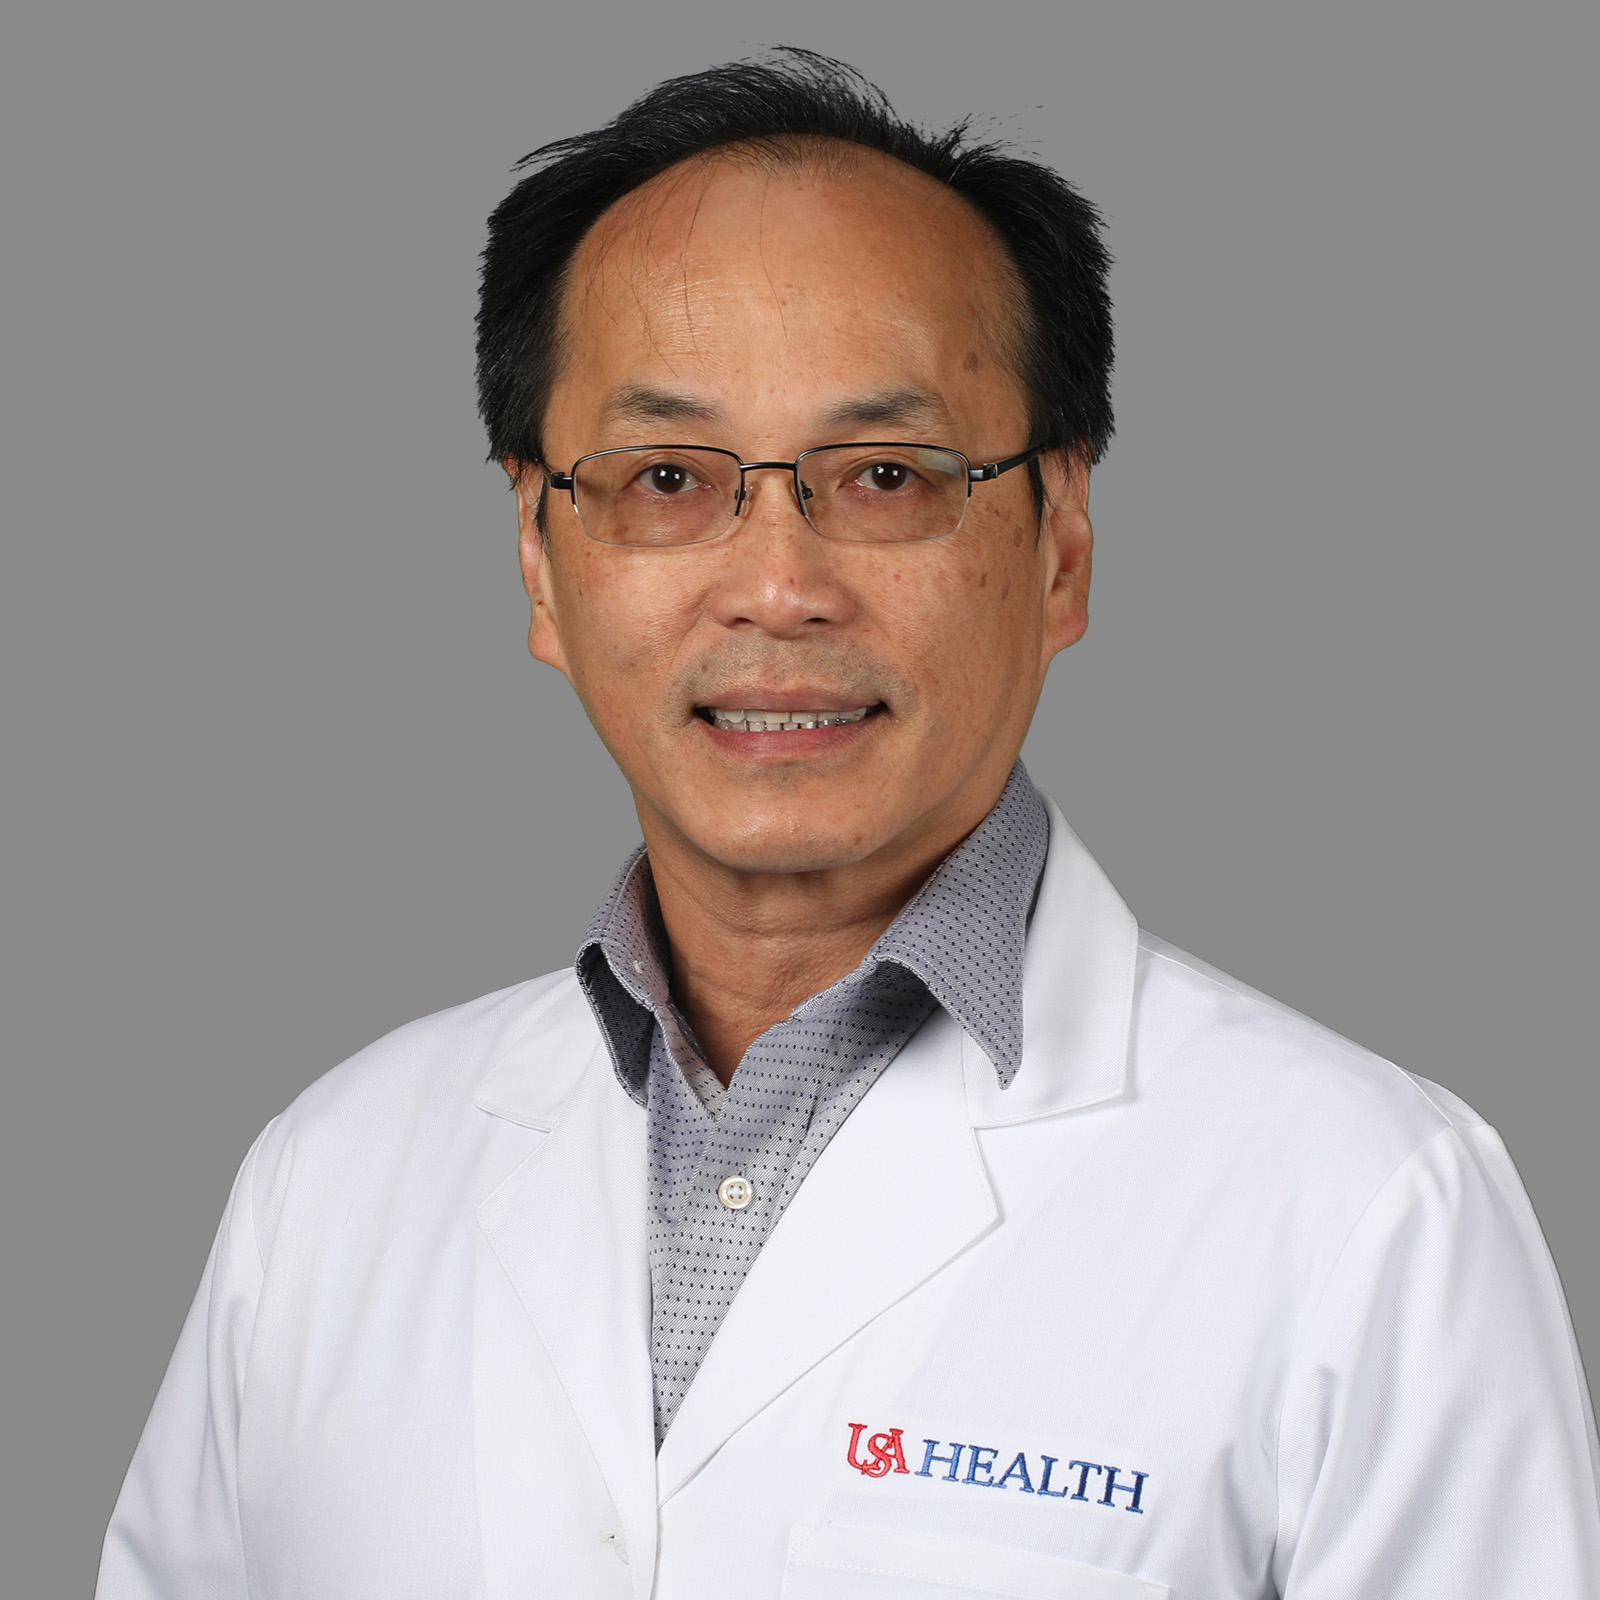 Tuan Hoai Pham, M.D., Ph.D., FACS, F.A.A.P.